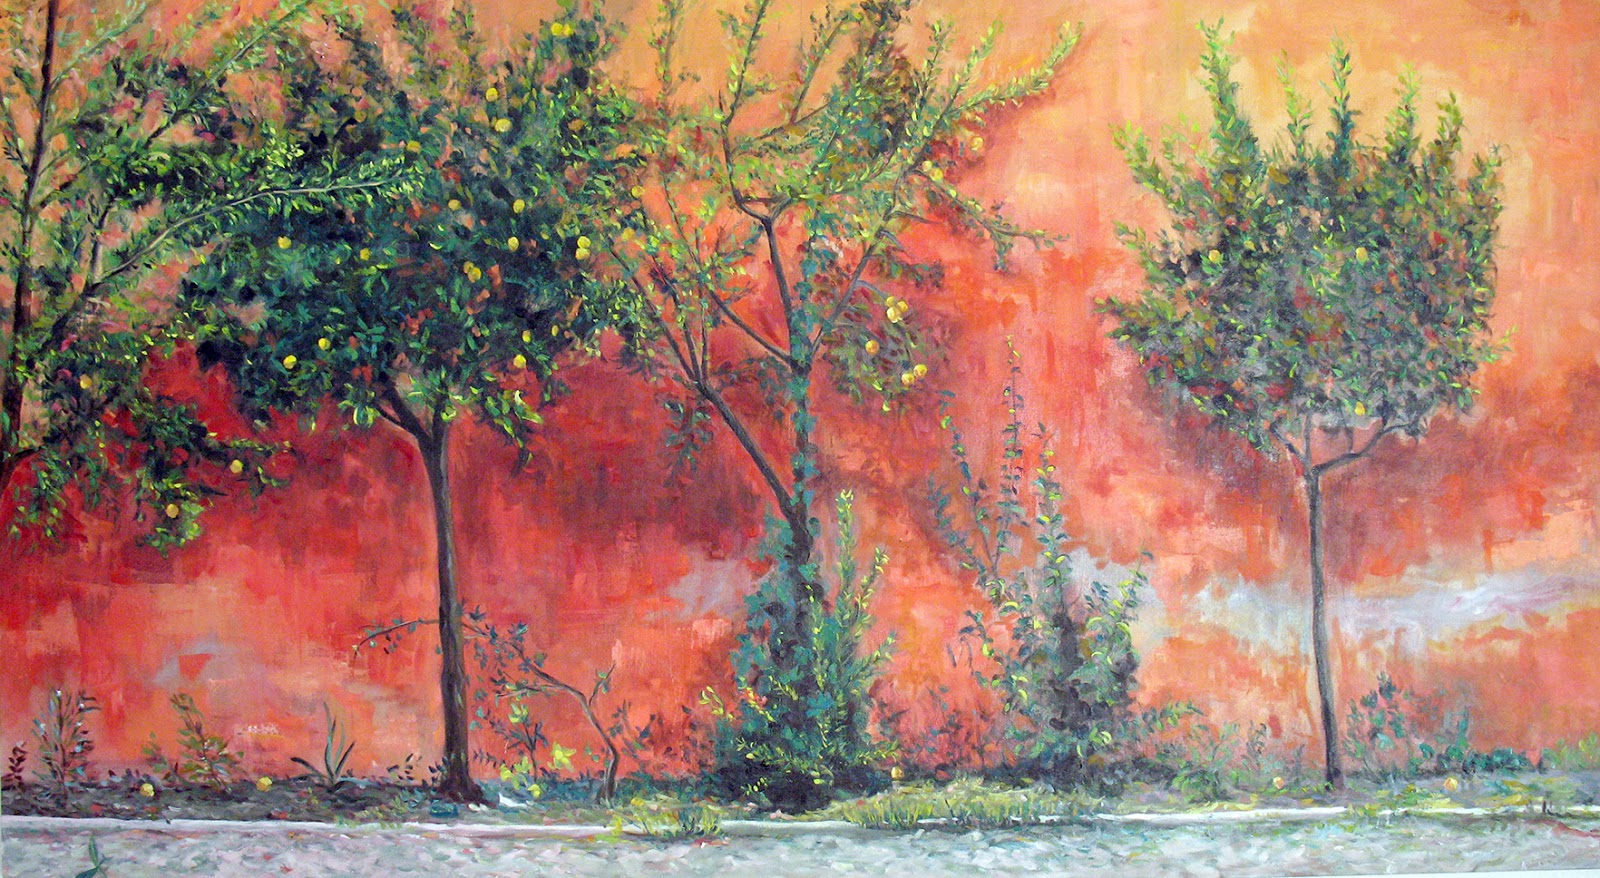 guirnalda Arena aislamiento achefeliz: Óleo sobre lienzo. "Los árboles delante del muro rojo"